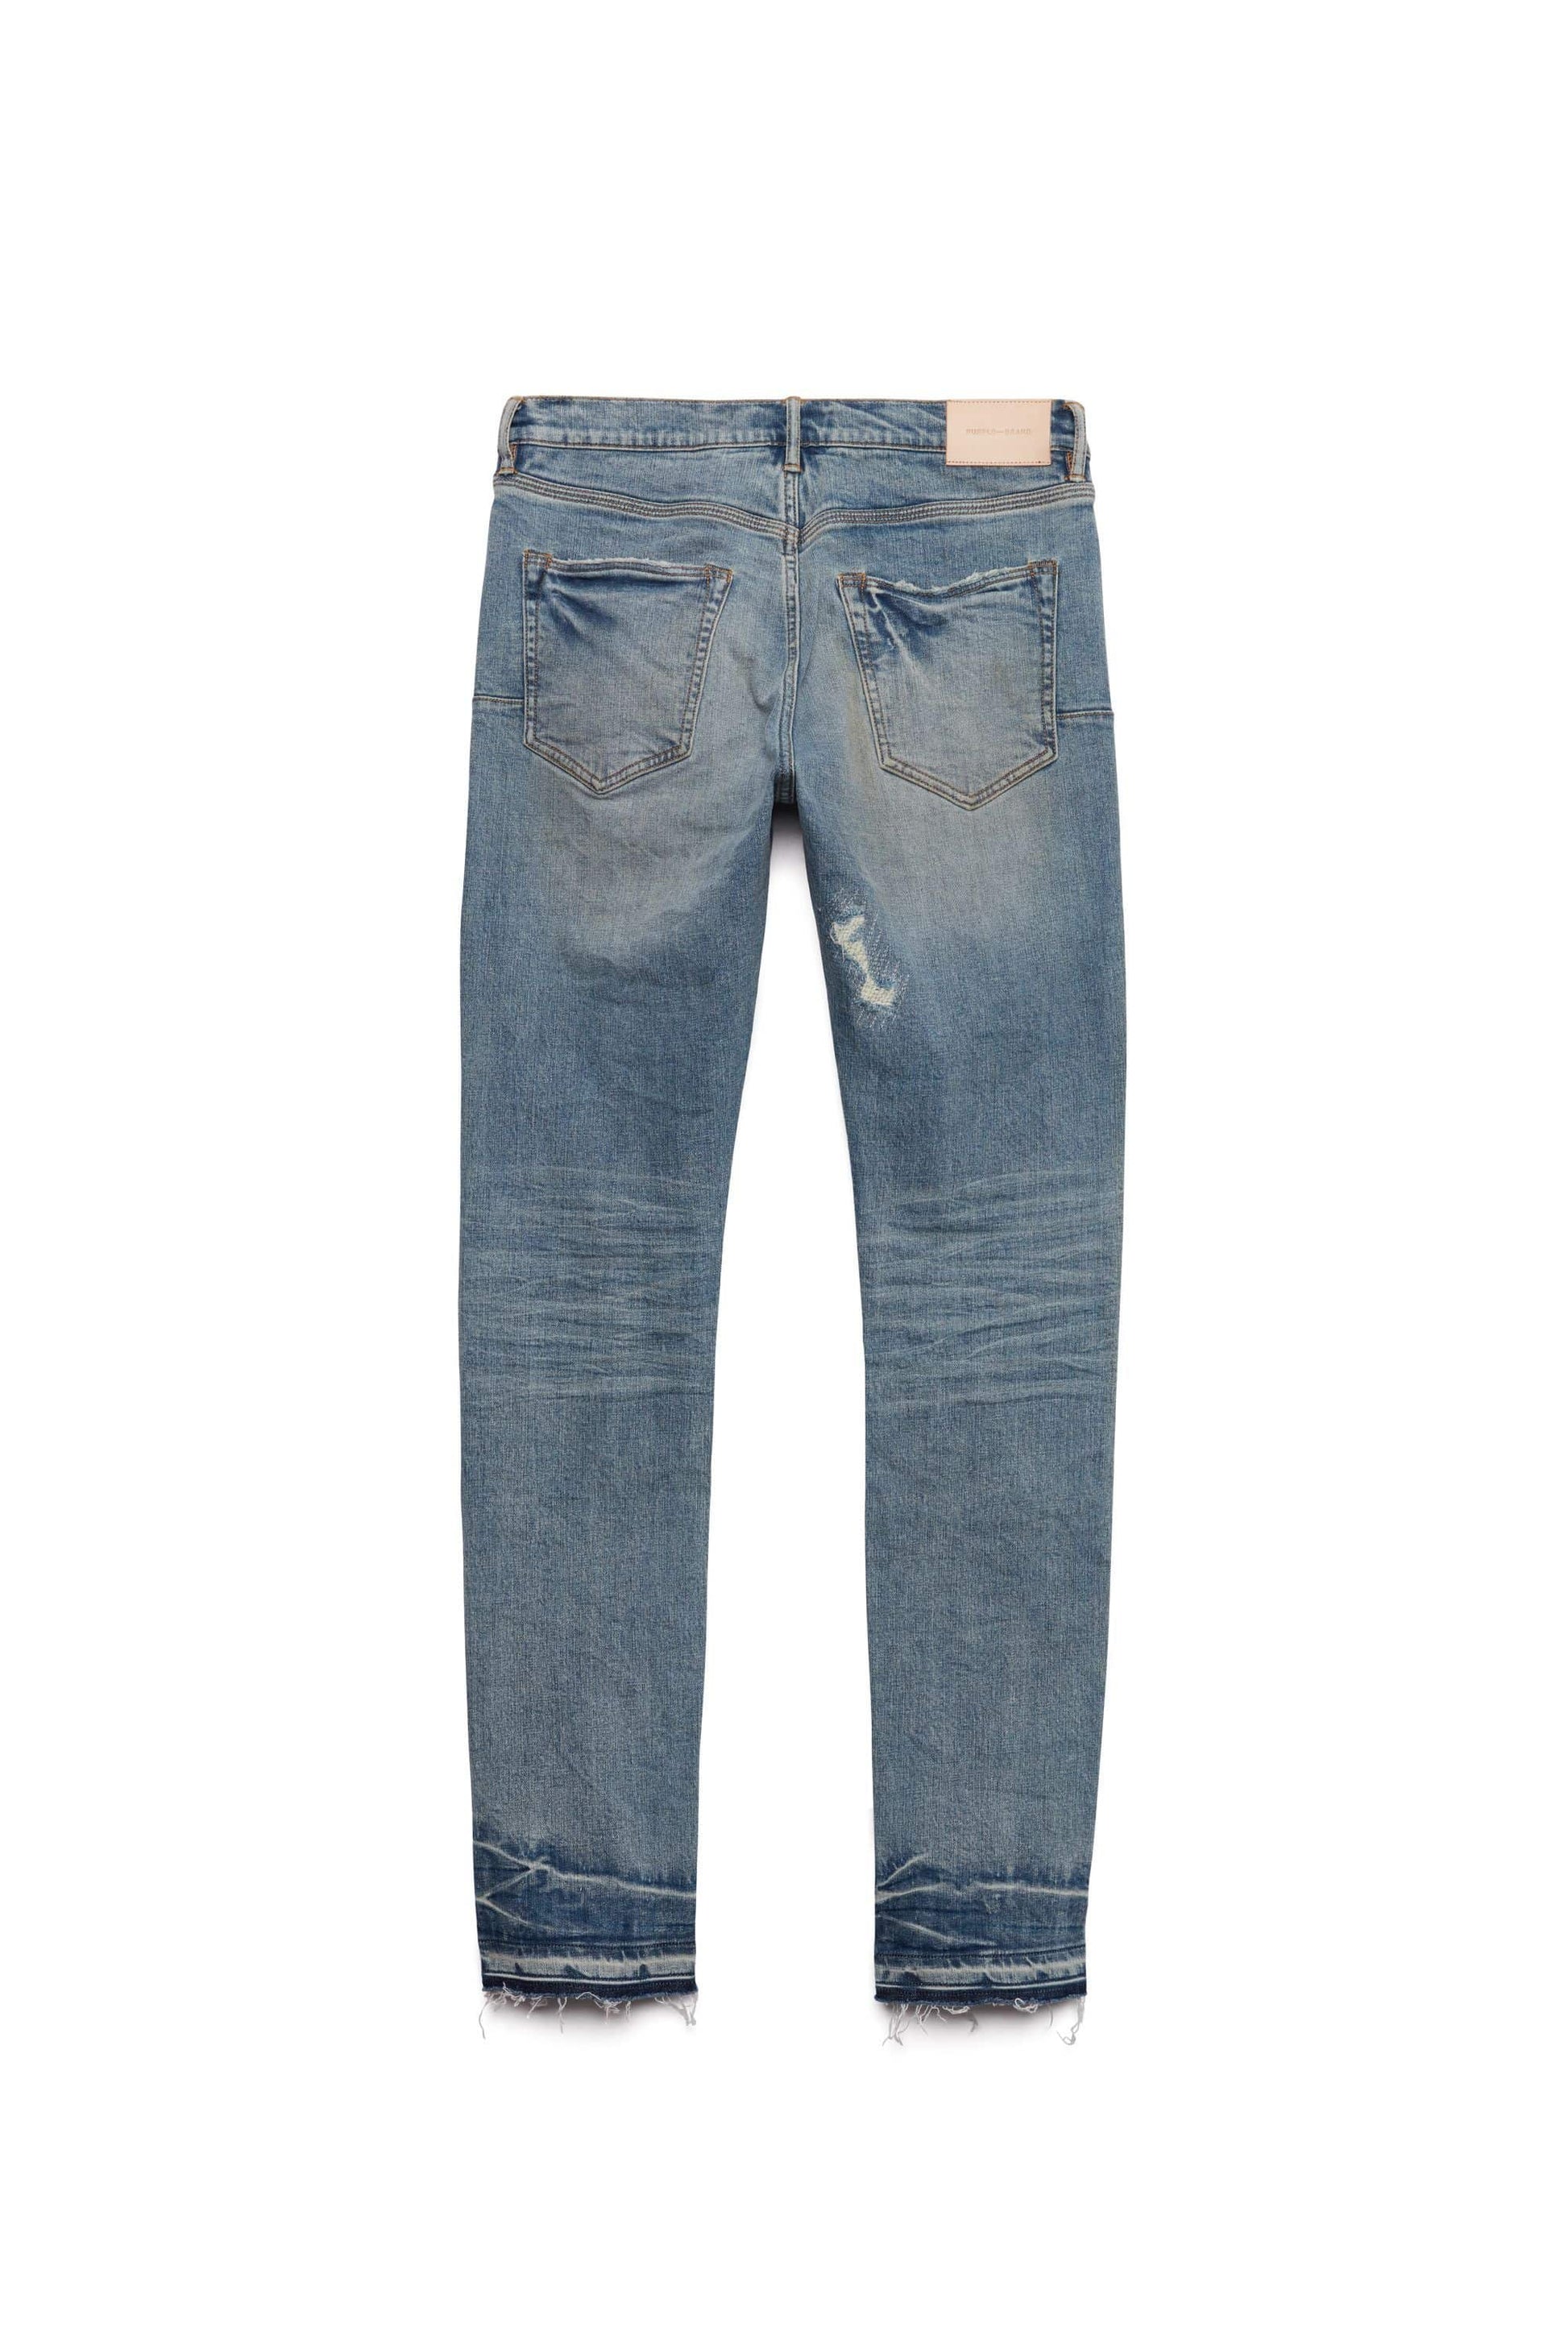 PURPLE BRAND Jeans slim fit in vbpi vintage bk pocket